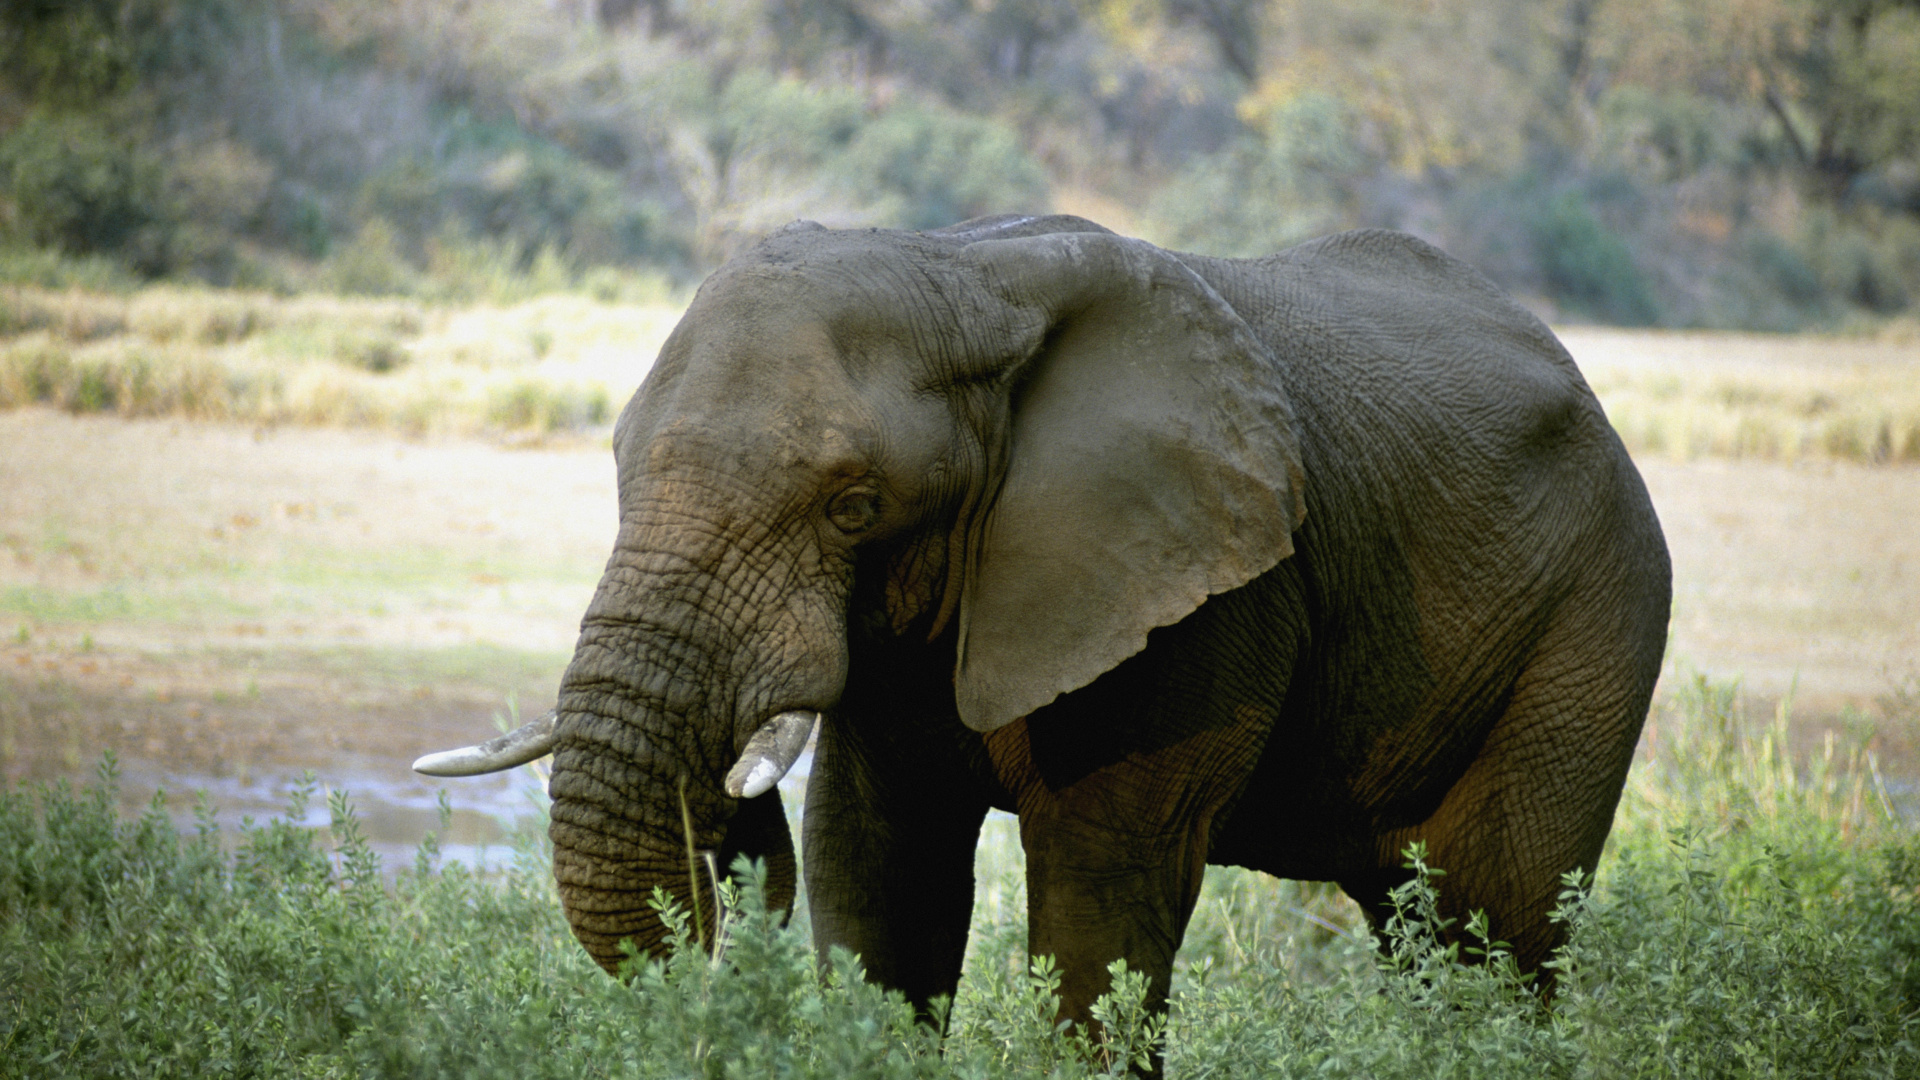 獠牙, 陆地动物, 野生动物, 大象和猛犸象, 印度大象 壁纸 1920x1080 允许